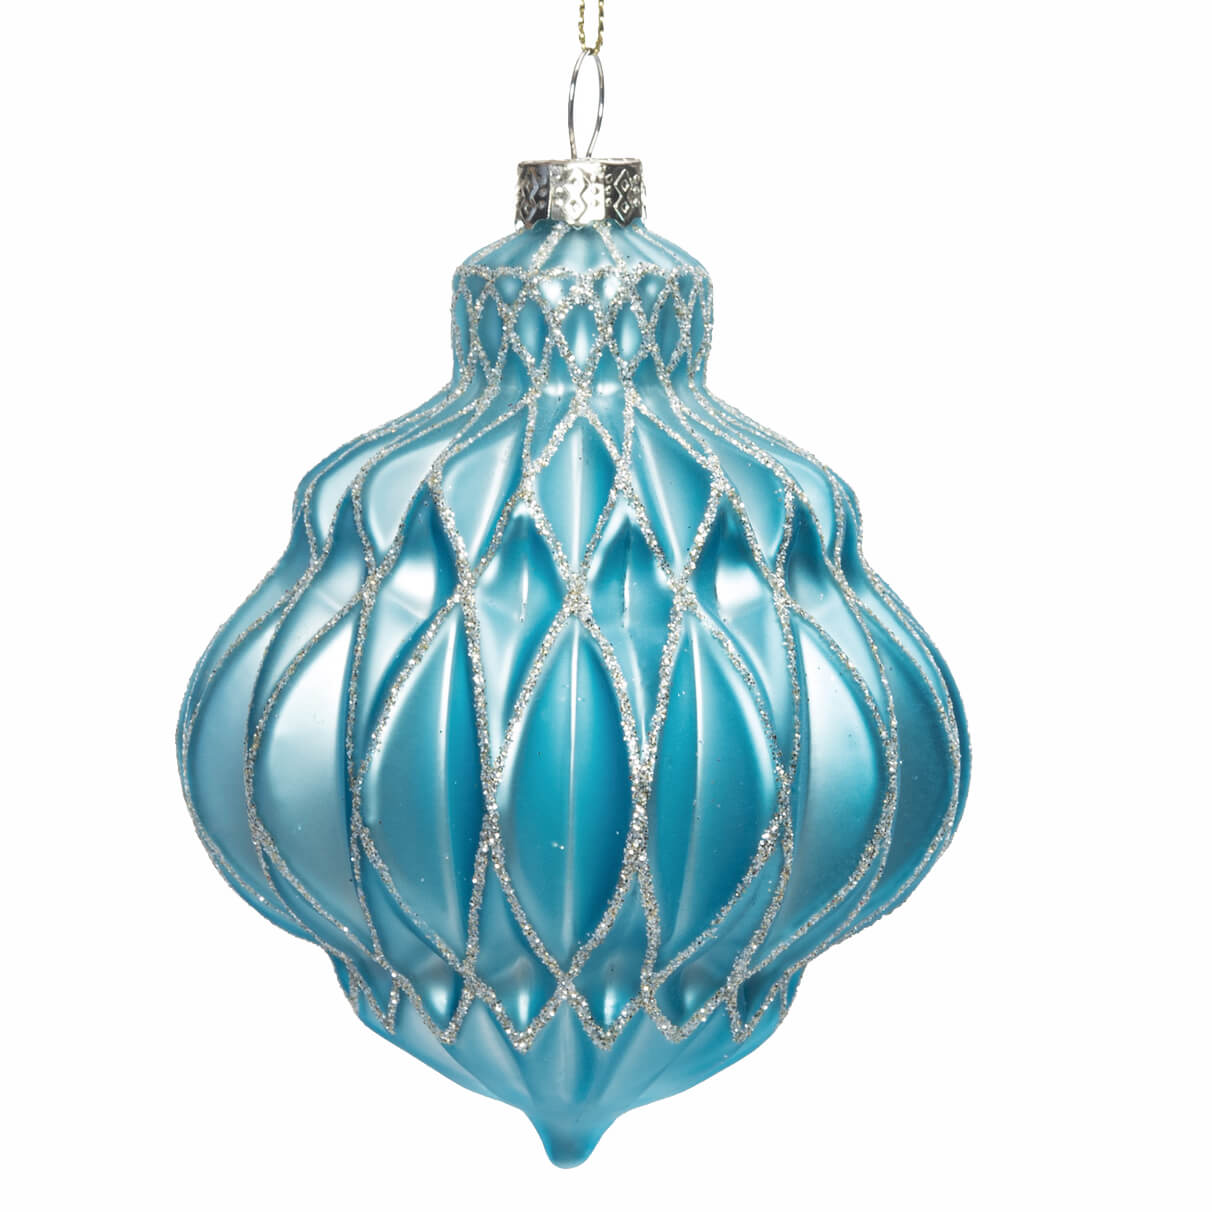 Bright Blue Glass Ornament